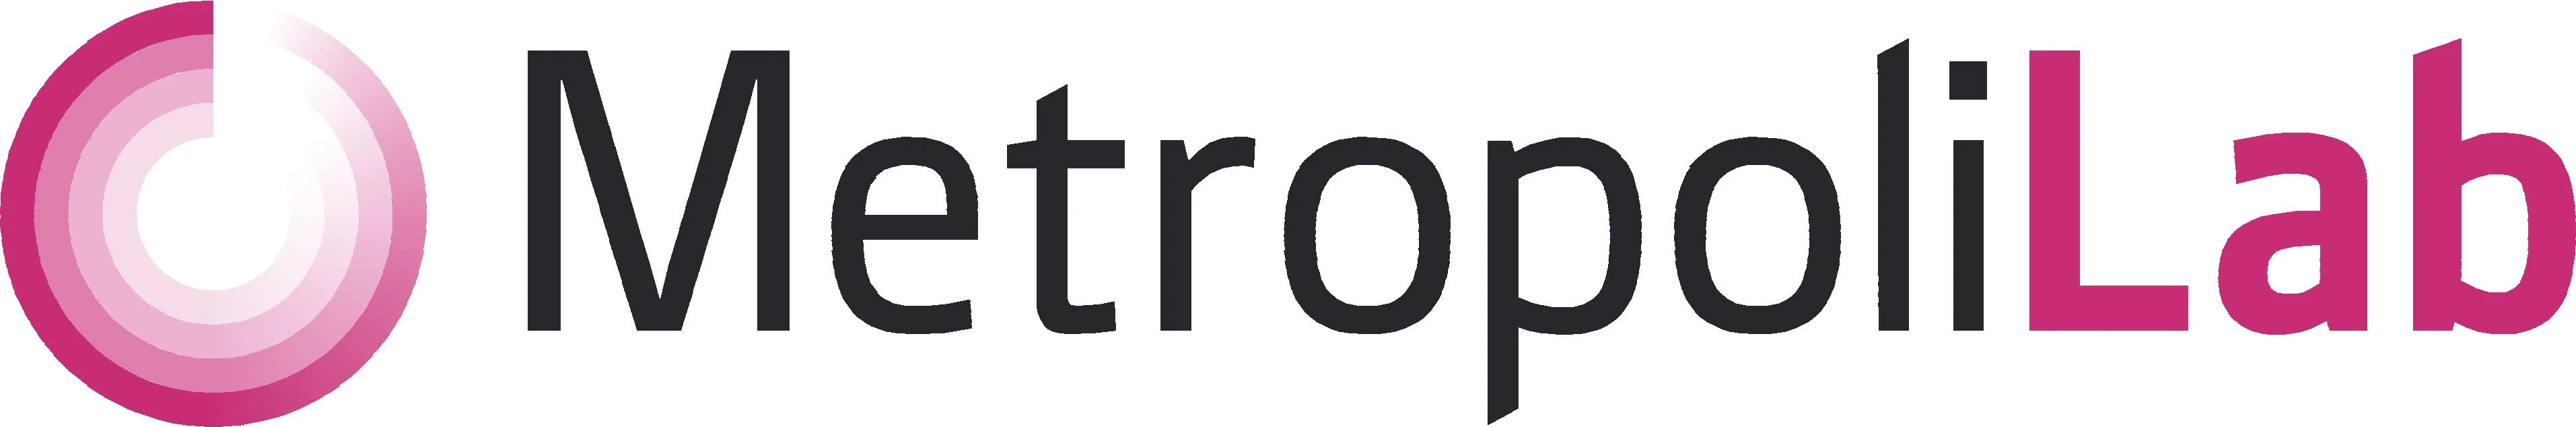 metropolilab_logo_cmyk